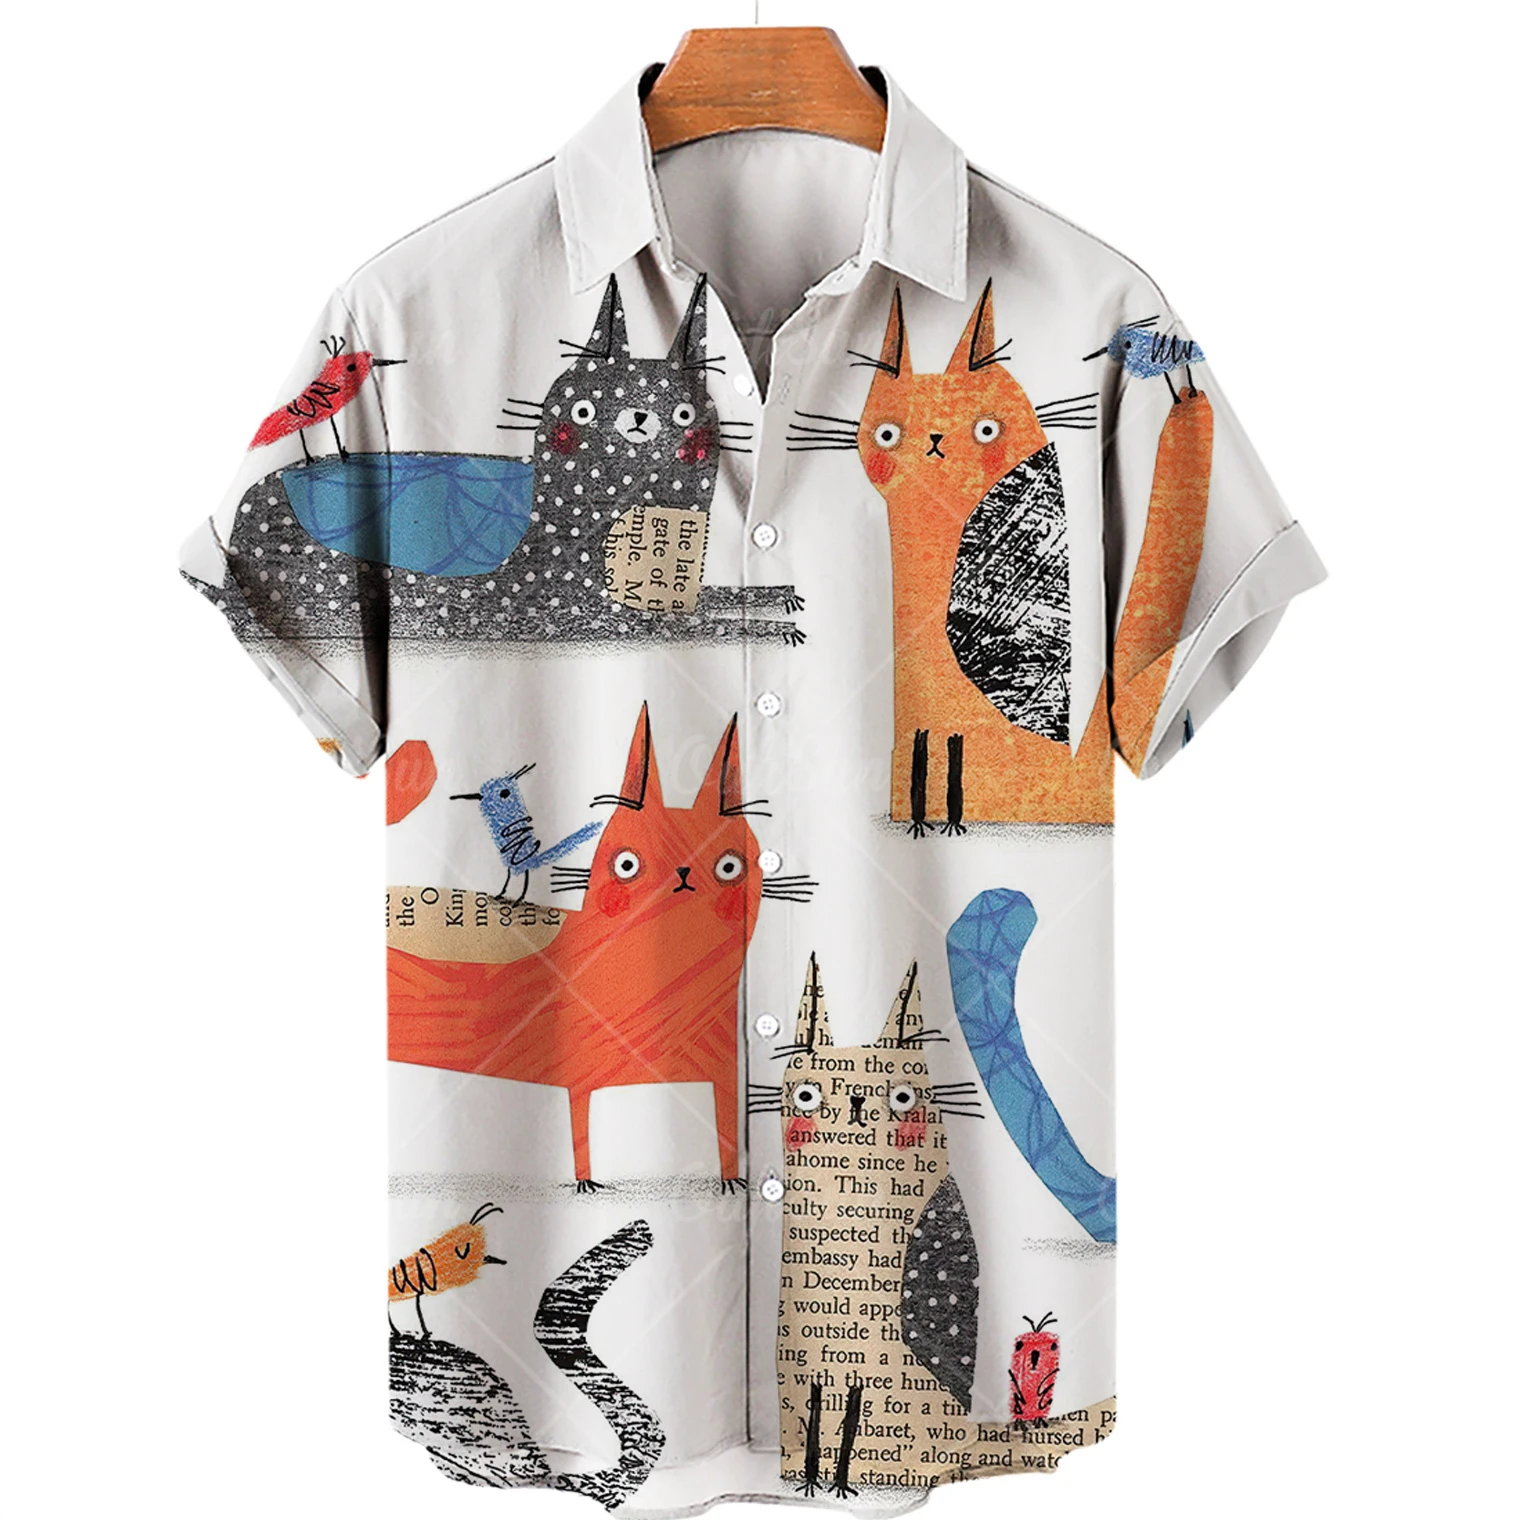 Mengen Hawaiian Shirt Cat Print Abstract Pattern Short Sleeve Loose Oversized Shirts Men and Women Summer Beach Casual Shirt Tops, Men's, Size: XL